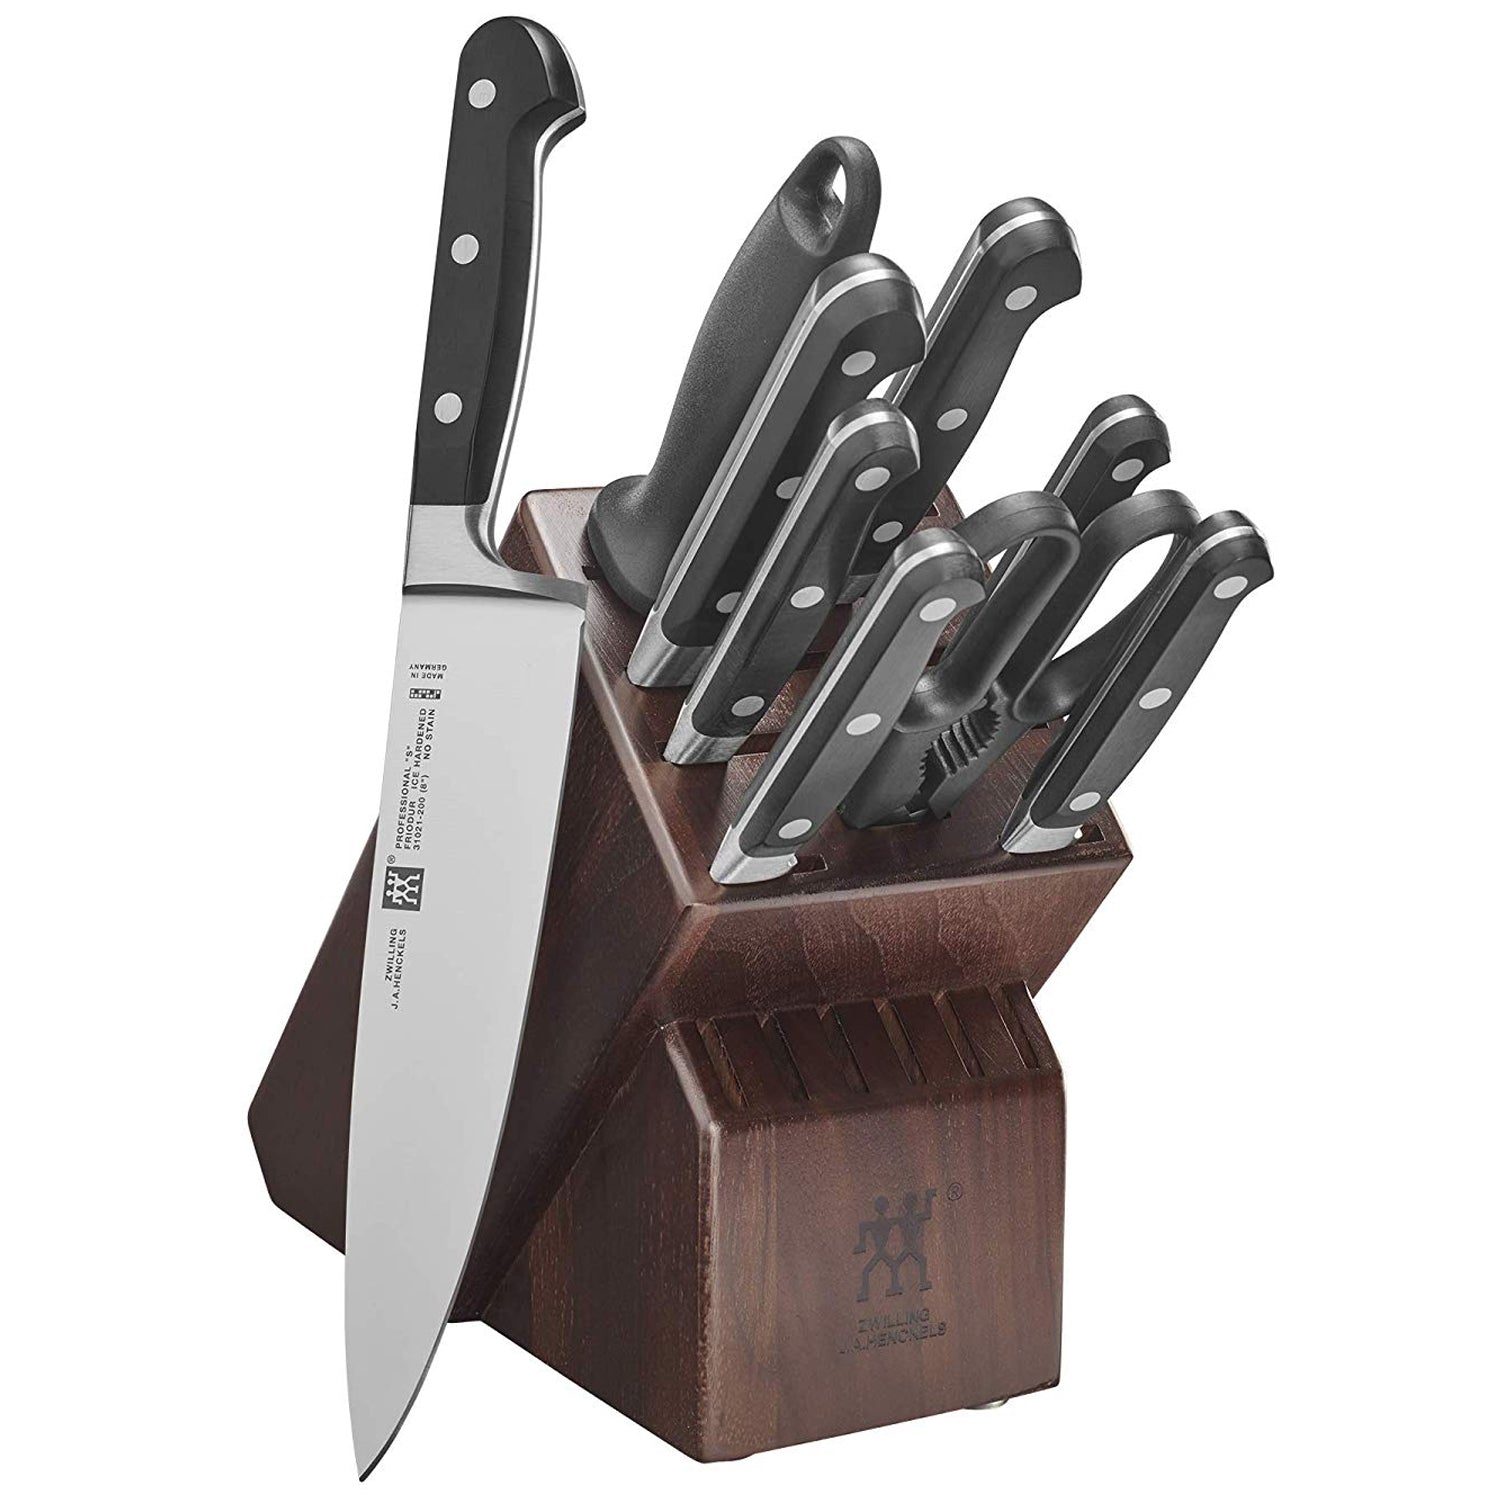 Zwilling J.A. Henckels TWIN Pro inchS inch 4 Piece Steak Knife Set